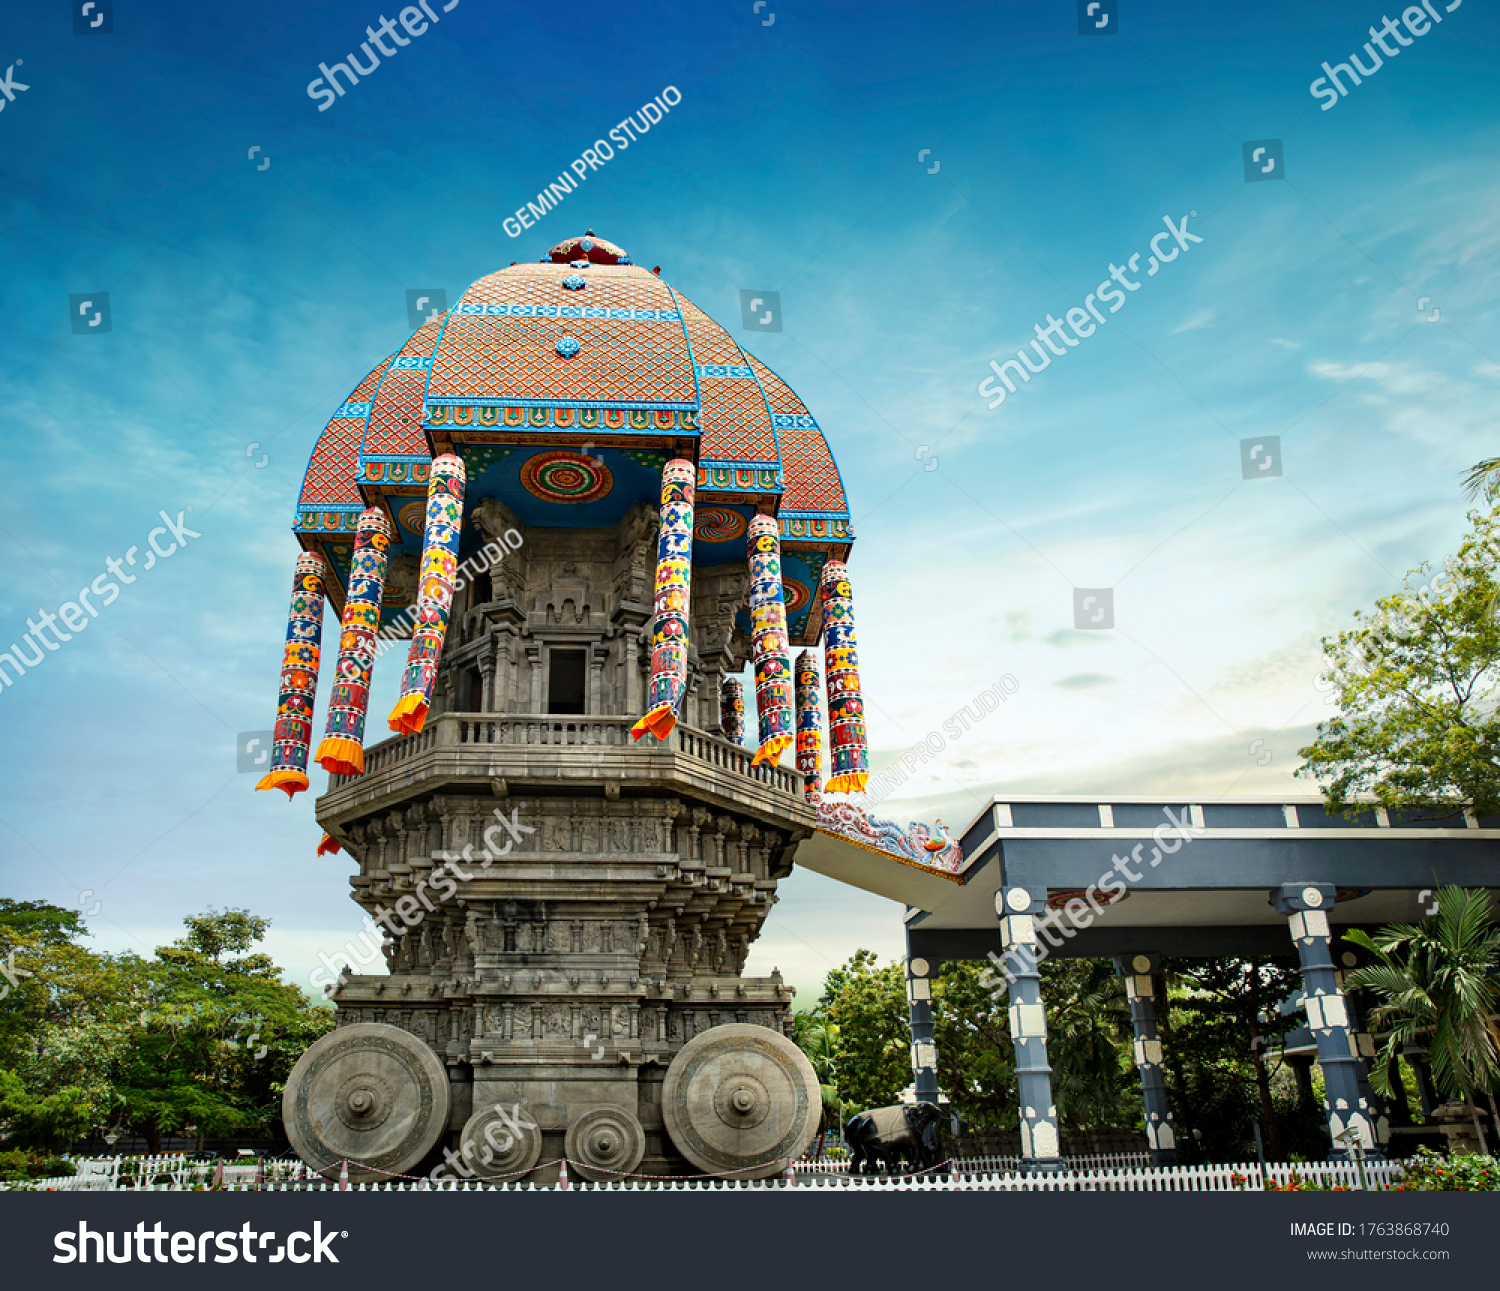 beautiful view of valluvar kottam,auditorium, monument in chennai, tamil nadu, india.
the monument is 39 meter high (128 feet) stone car, Replica of the famous temple chariot of Thiruvarur.thiruvallur #1763868740